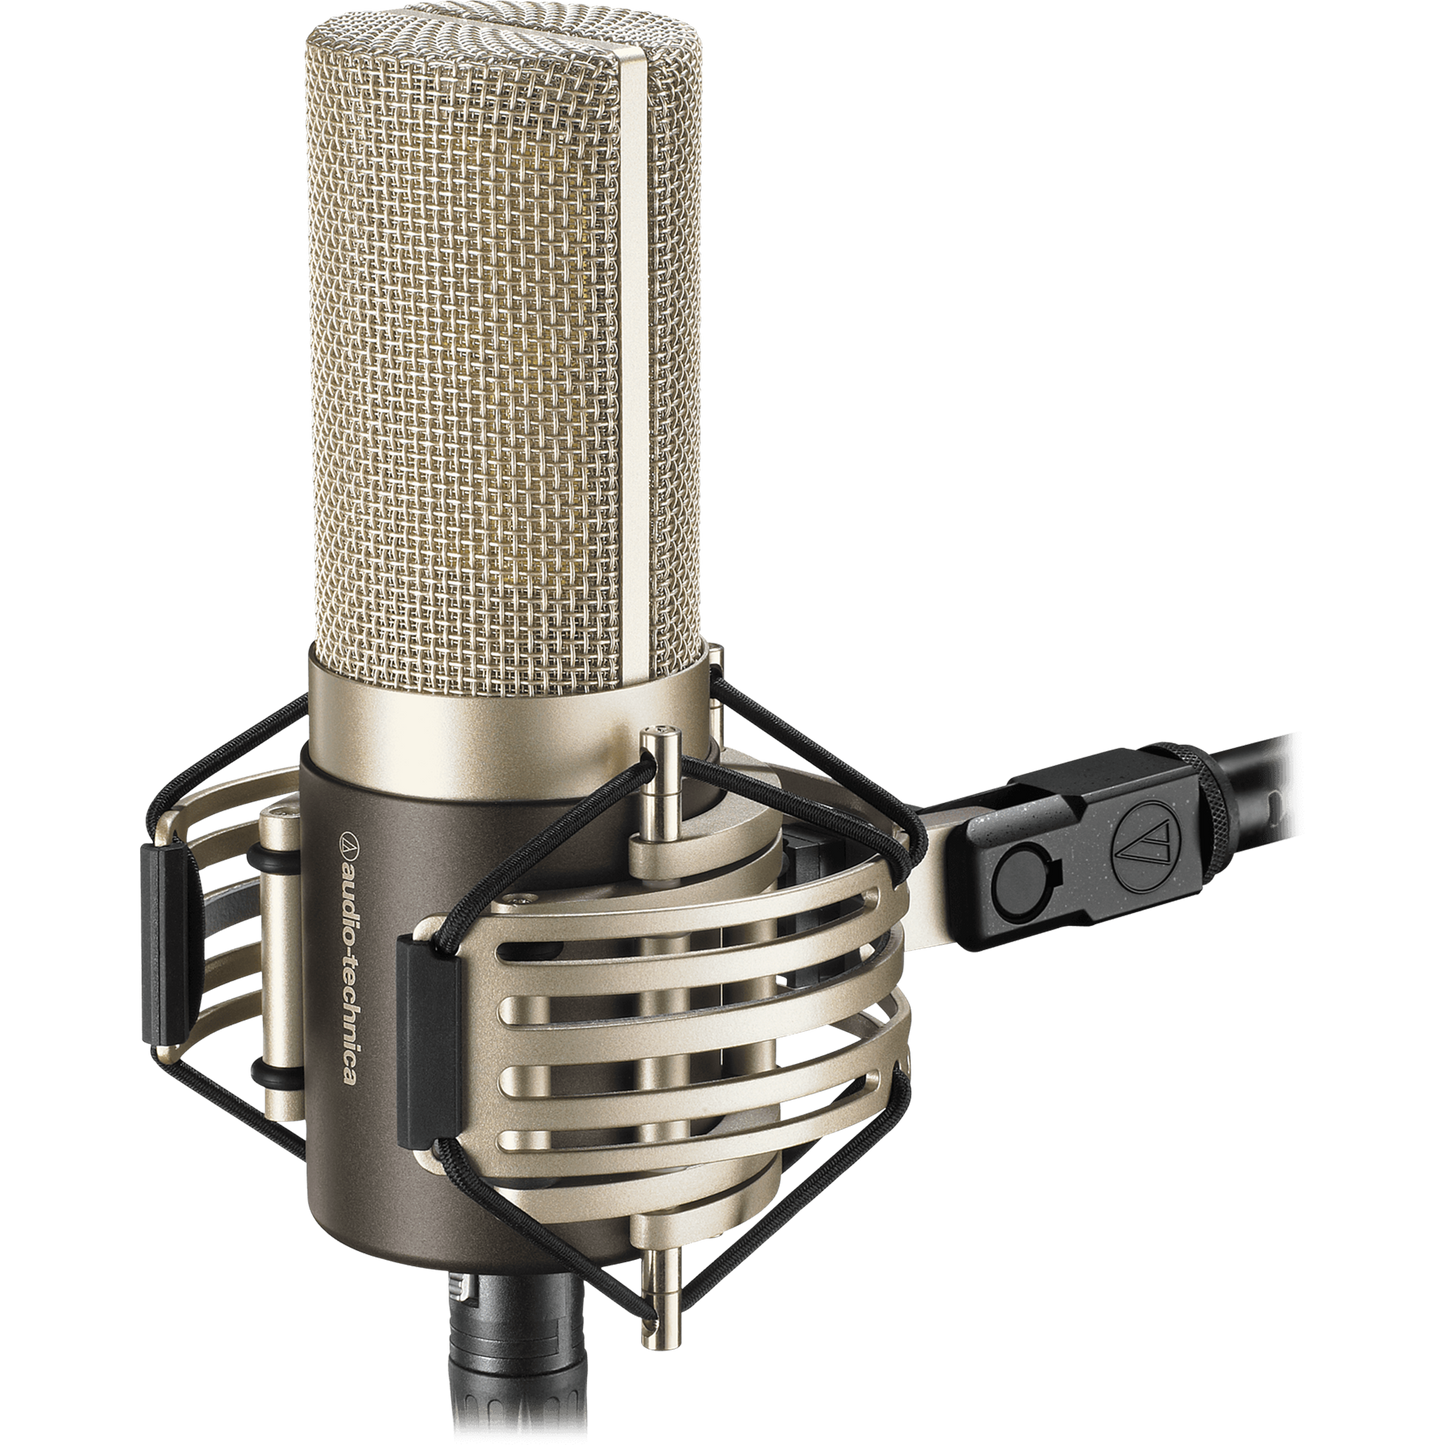 Audio Technica AT5040 Large Diaphragm Condenser Studio Vocal Microphone